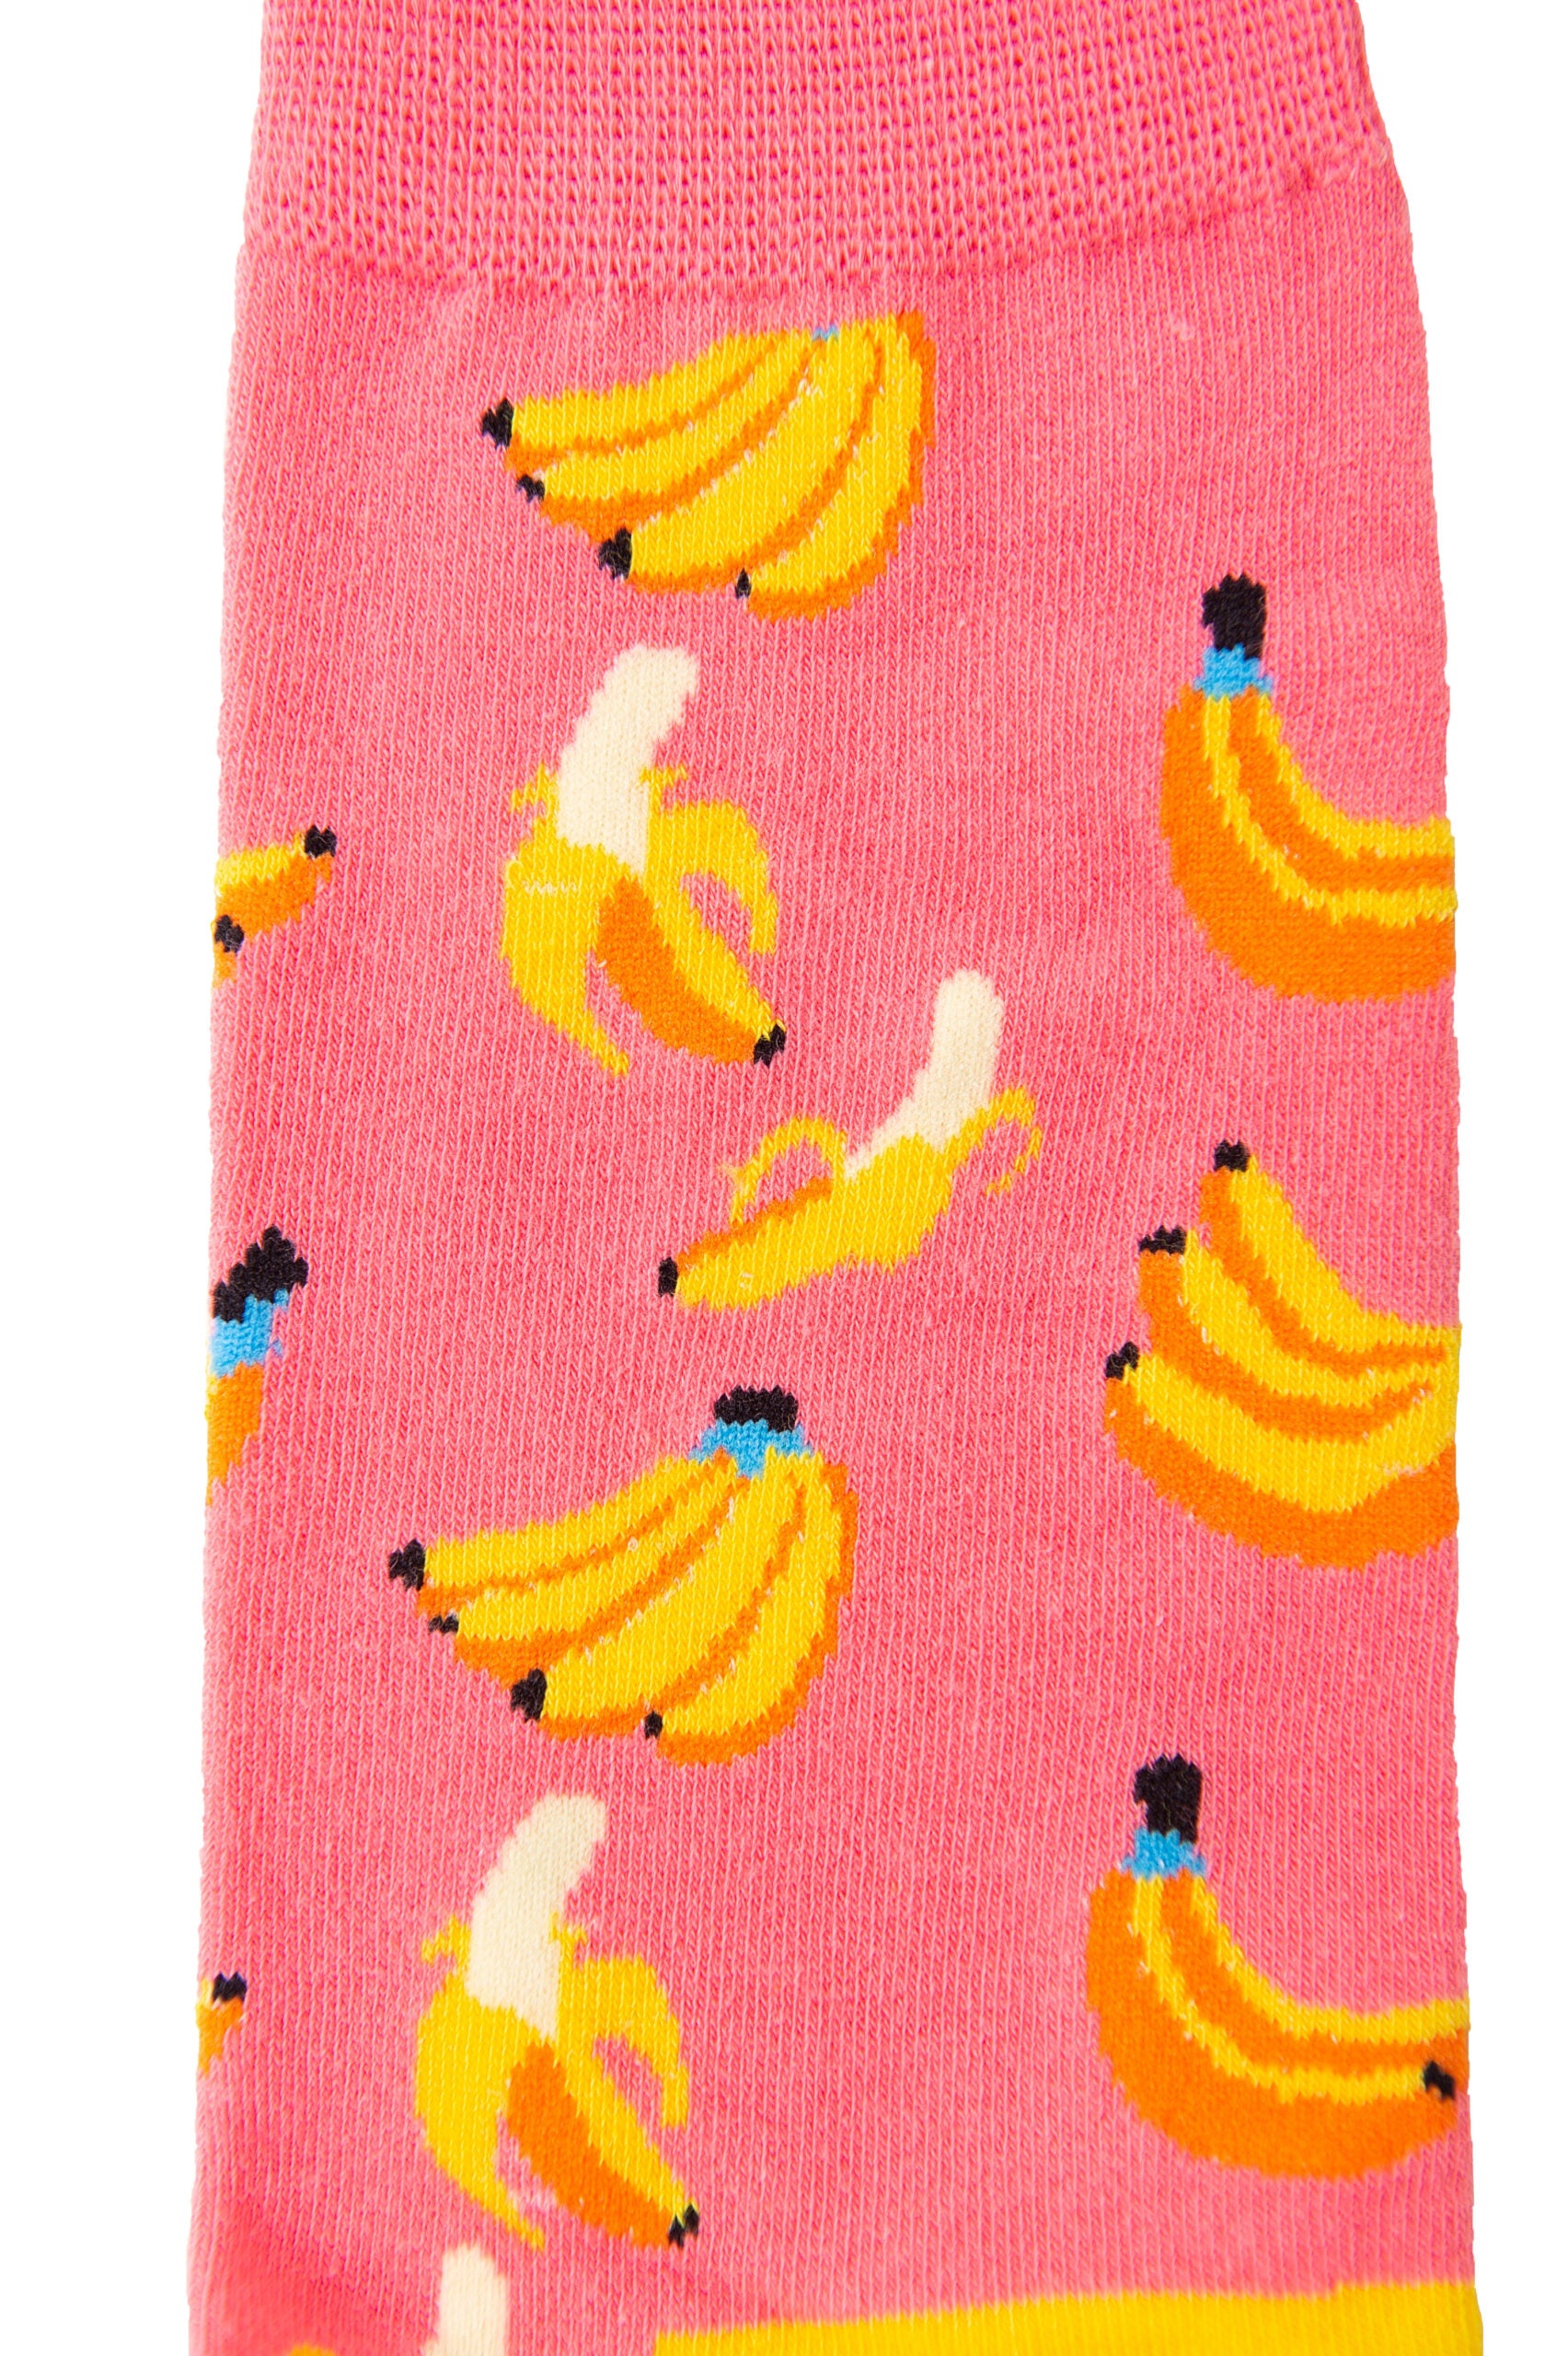 A pair of Banana Pink Socks.